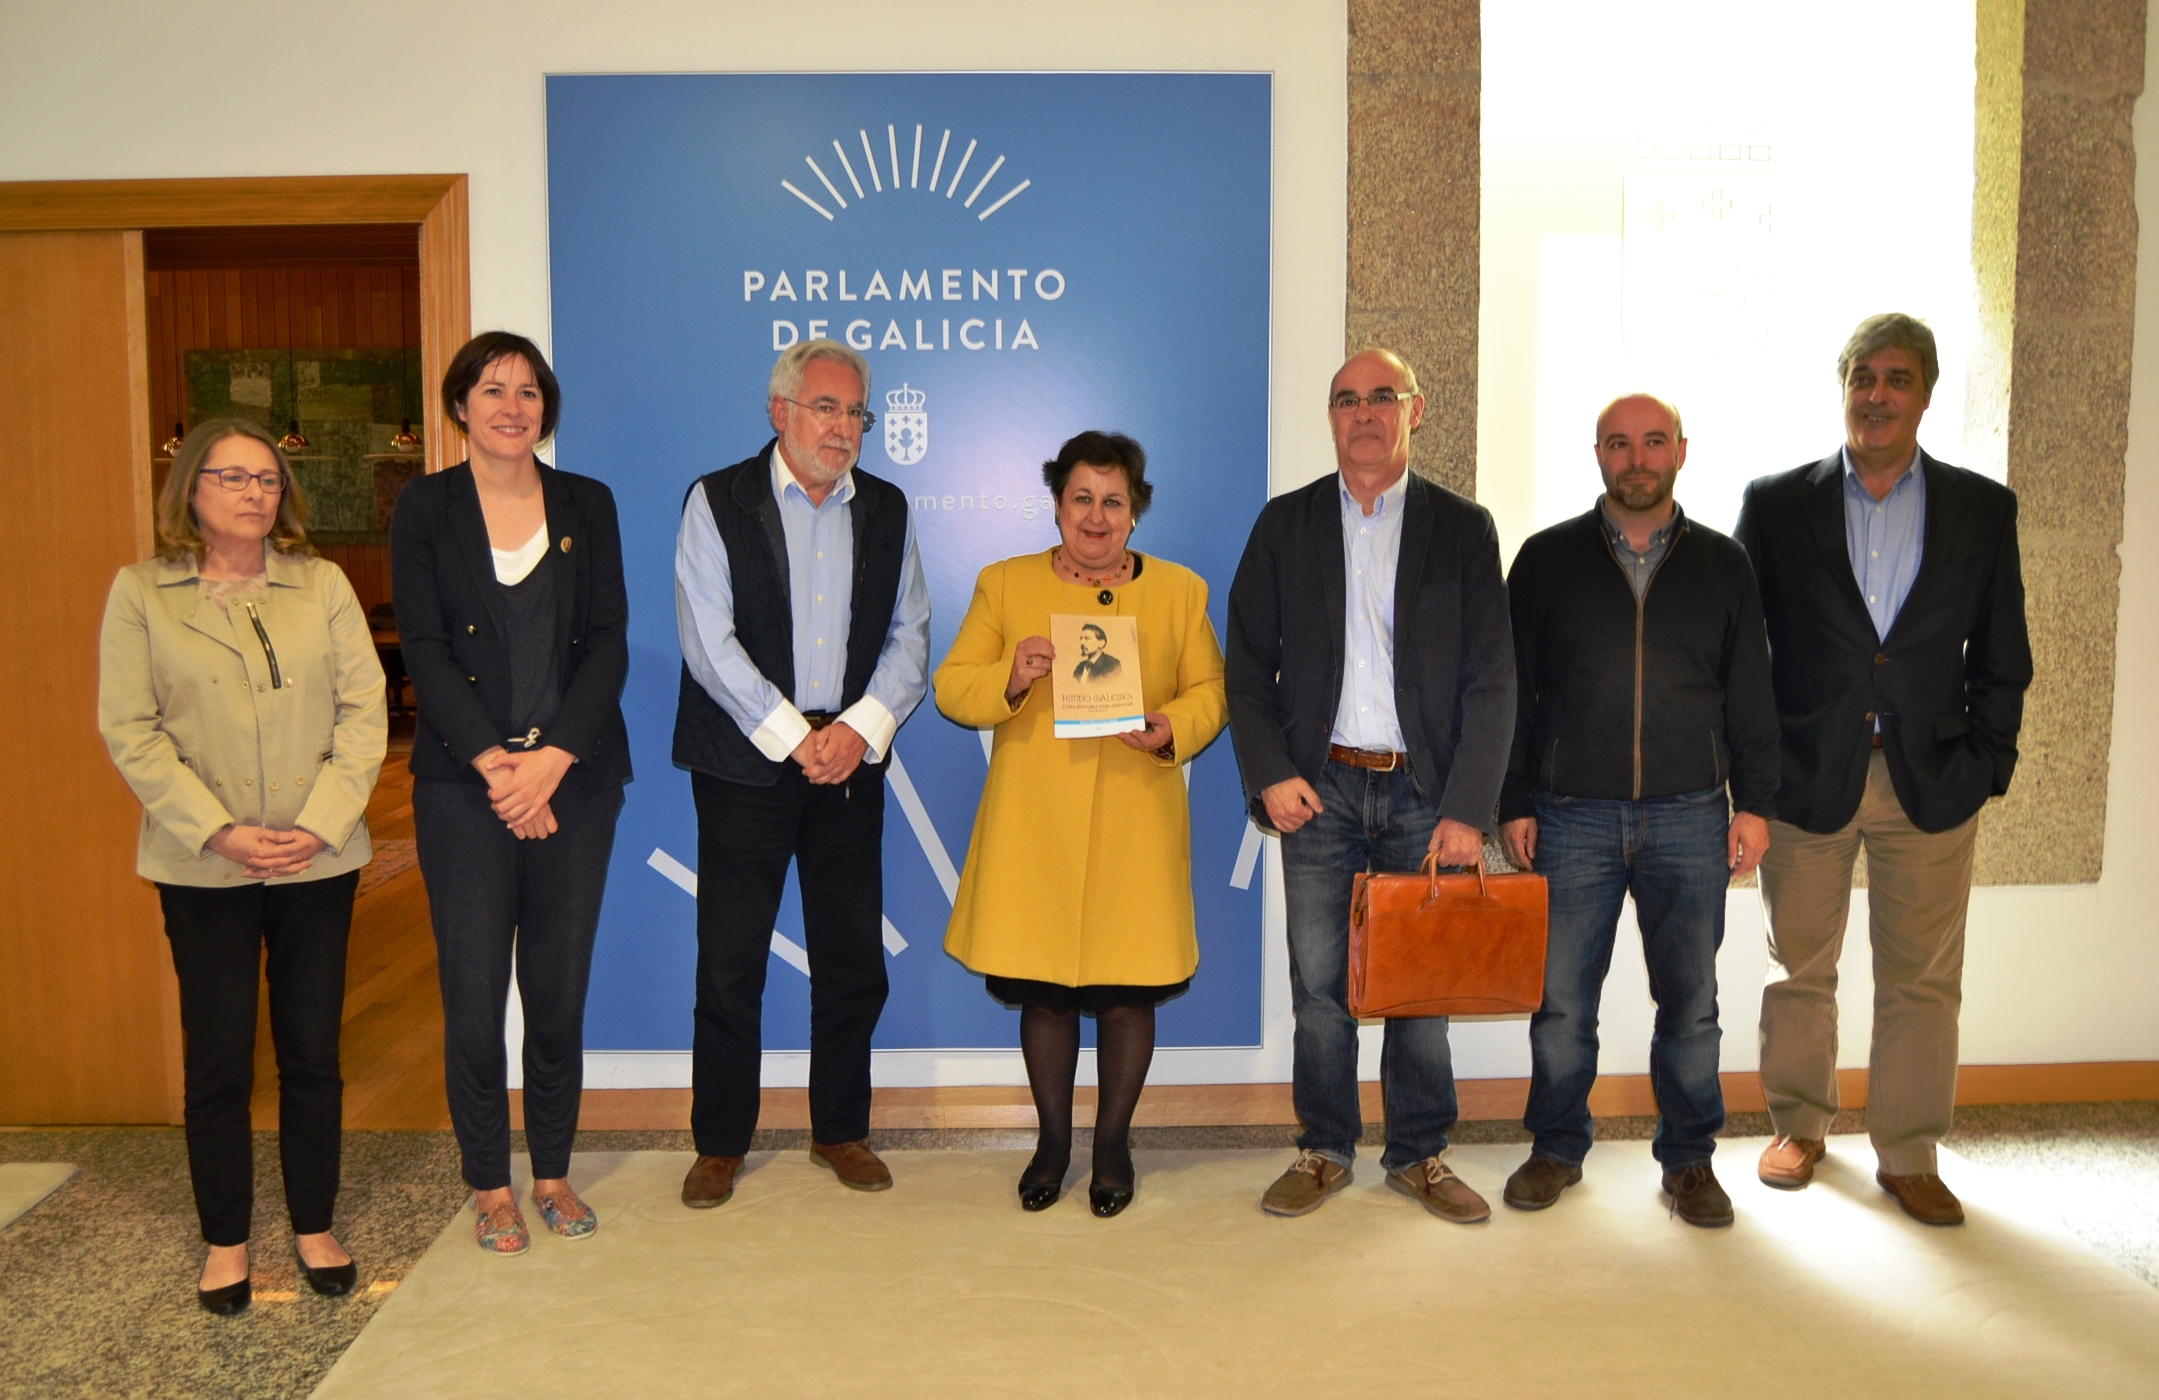 Foto da noticia:Pilar García Negro entrega ao presidente do Parlamento o seu libro “Himno galego: Unha historia parlamentar (inconclusa)”